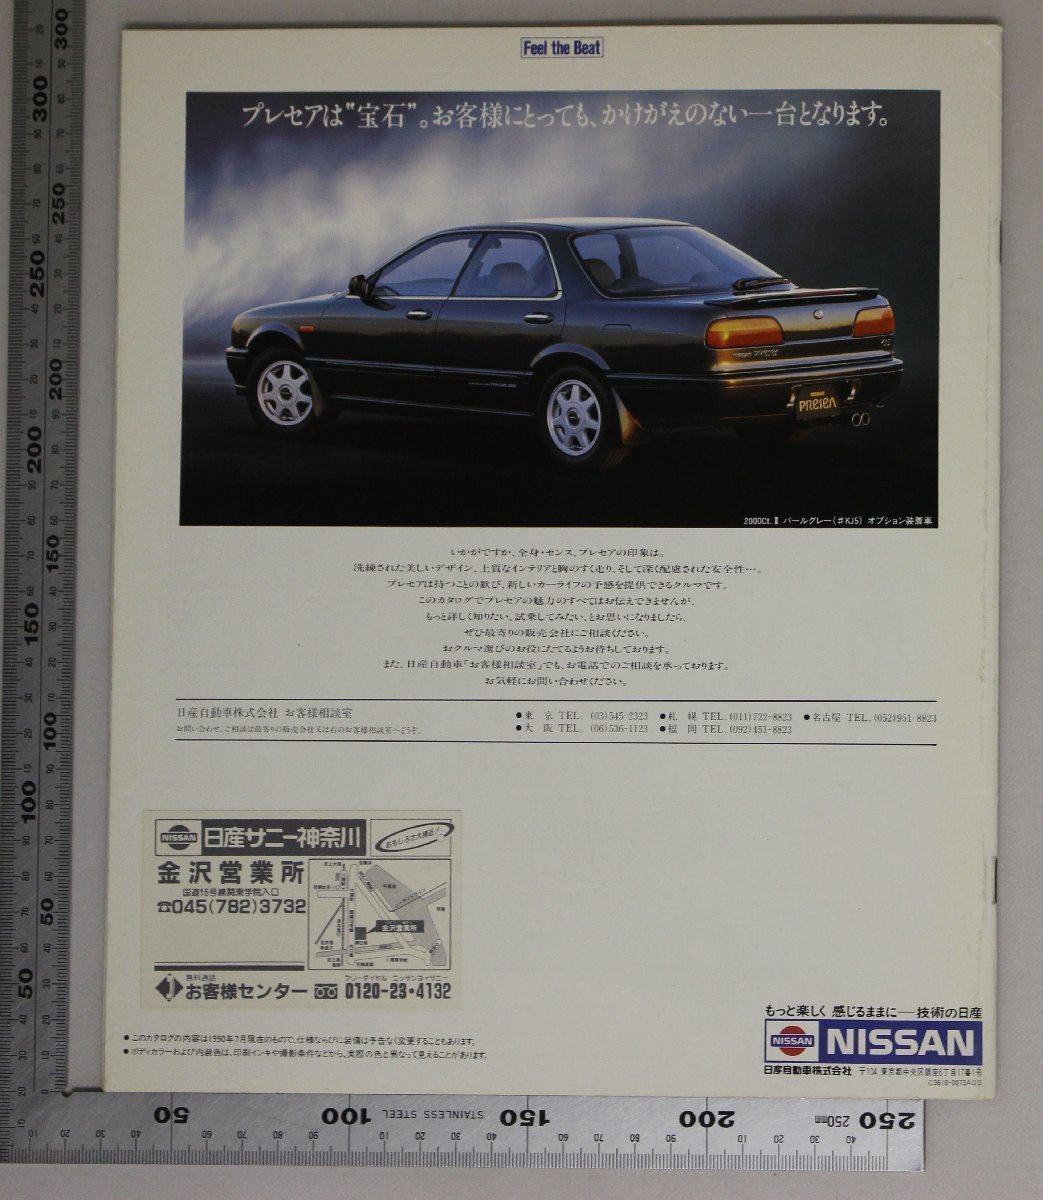 自動車カタログ『PReSeA』1991年 NISSAN 補足:プレセア1800Ct.2マリーンブルーメーターボディカラーツイード本革インテリアメカニズム_画像8